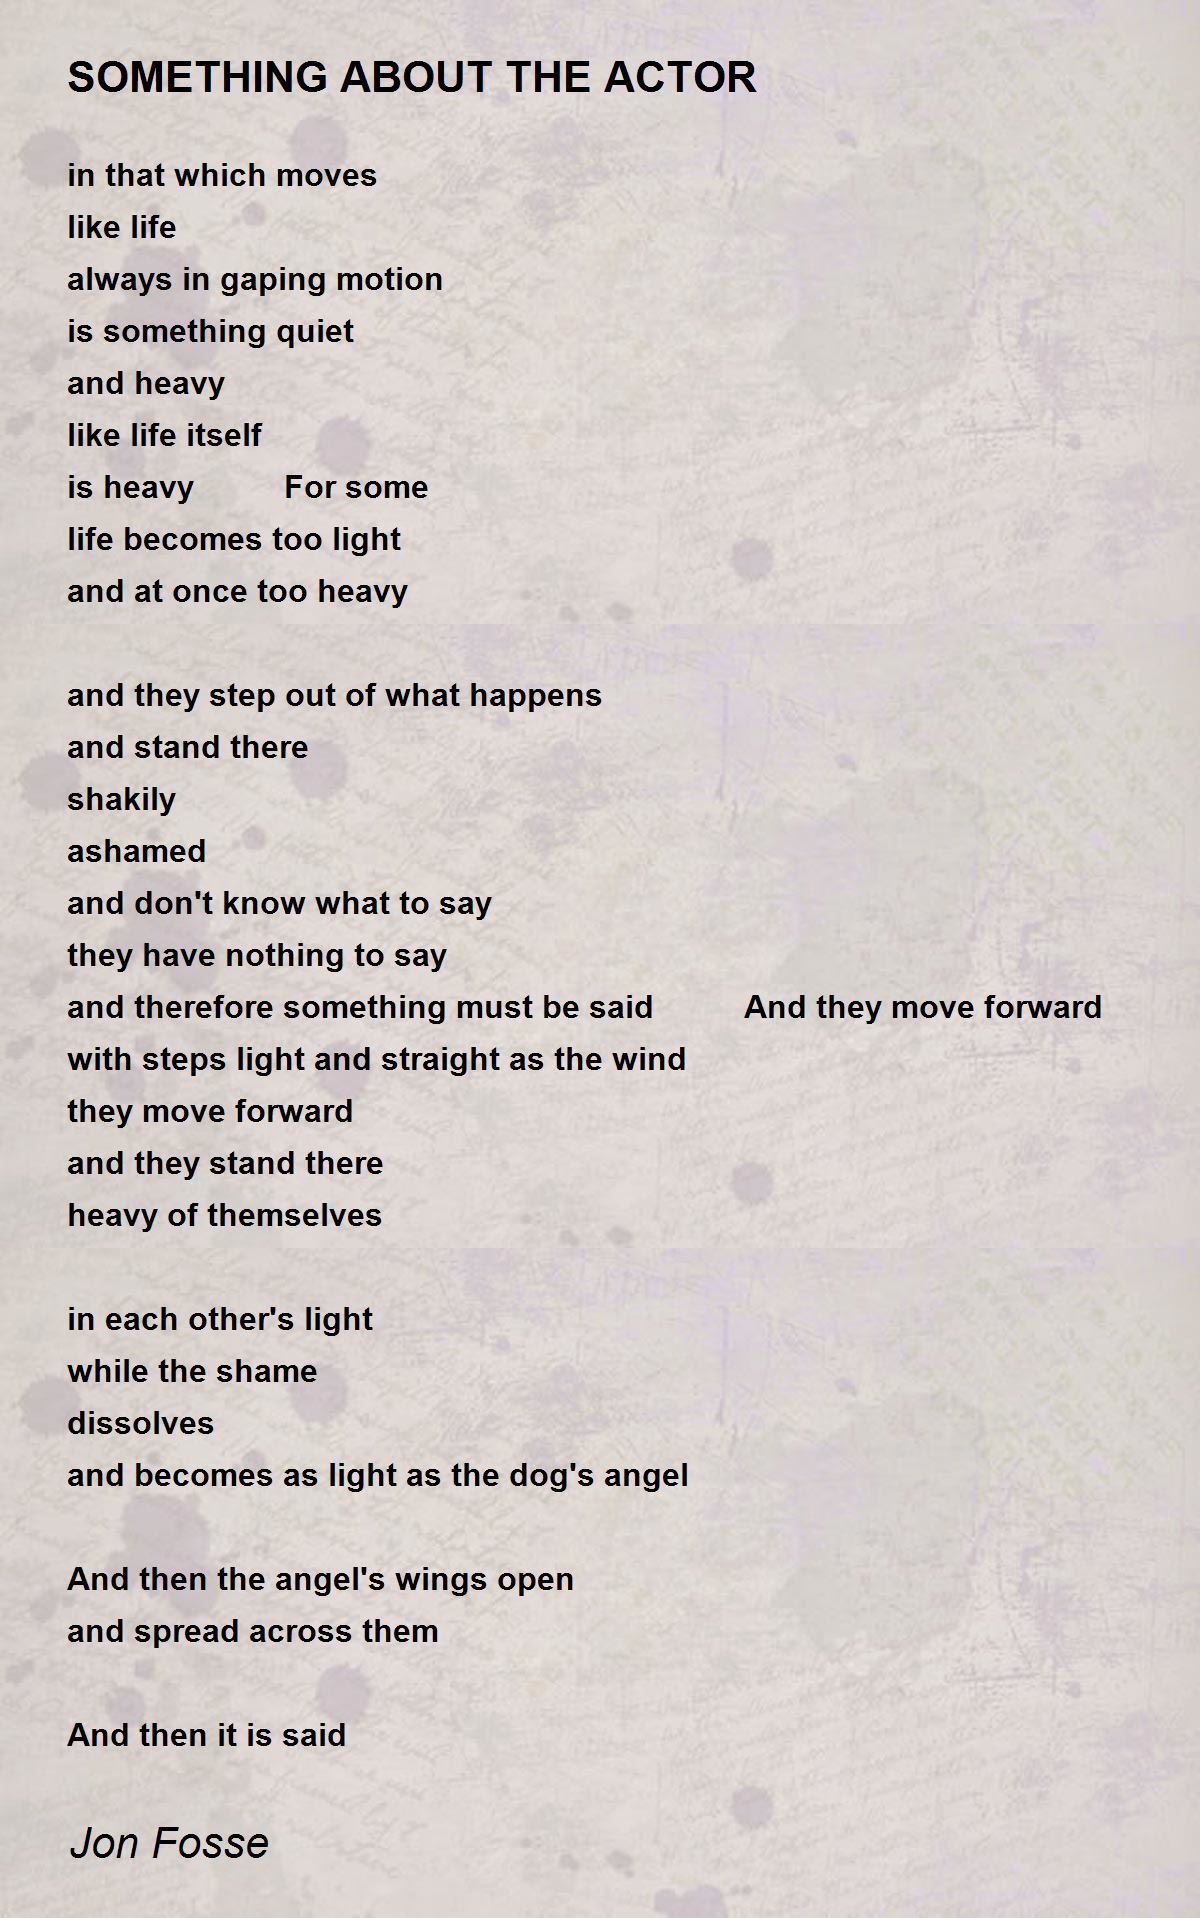 SOMETHING ABOUT THE ACTOR - SOMETHING ABOUT THE ACTOR Poem by Jon Fosse